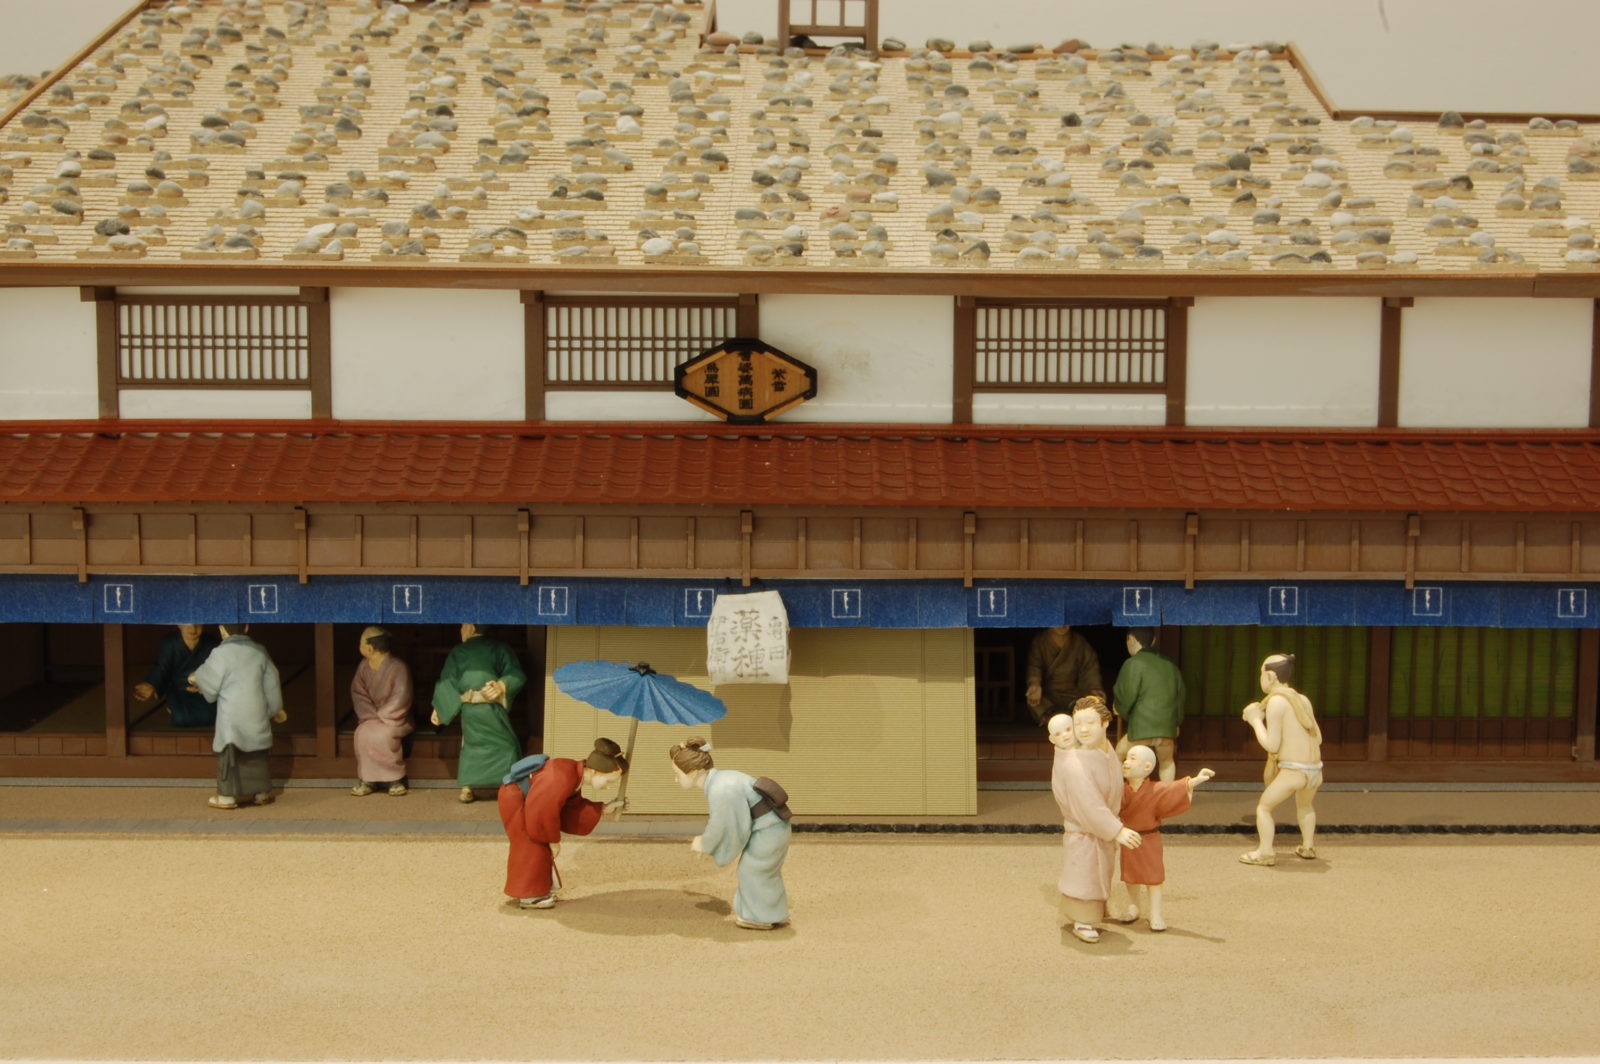 城下町金沢の暮らしと町並み模型(石川県立歴史博物館常設展示)